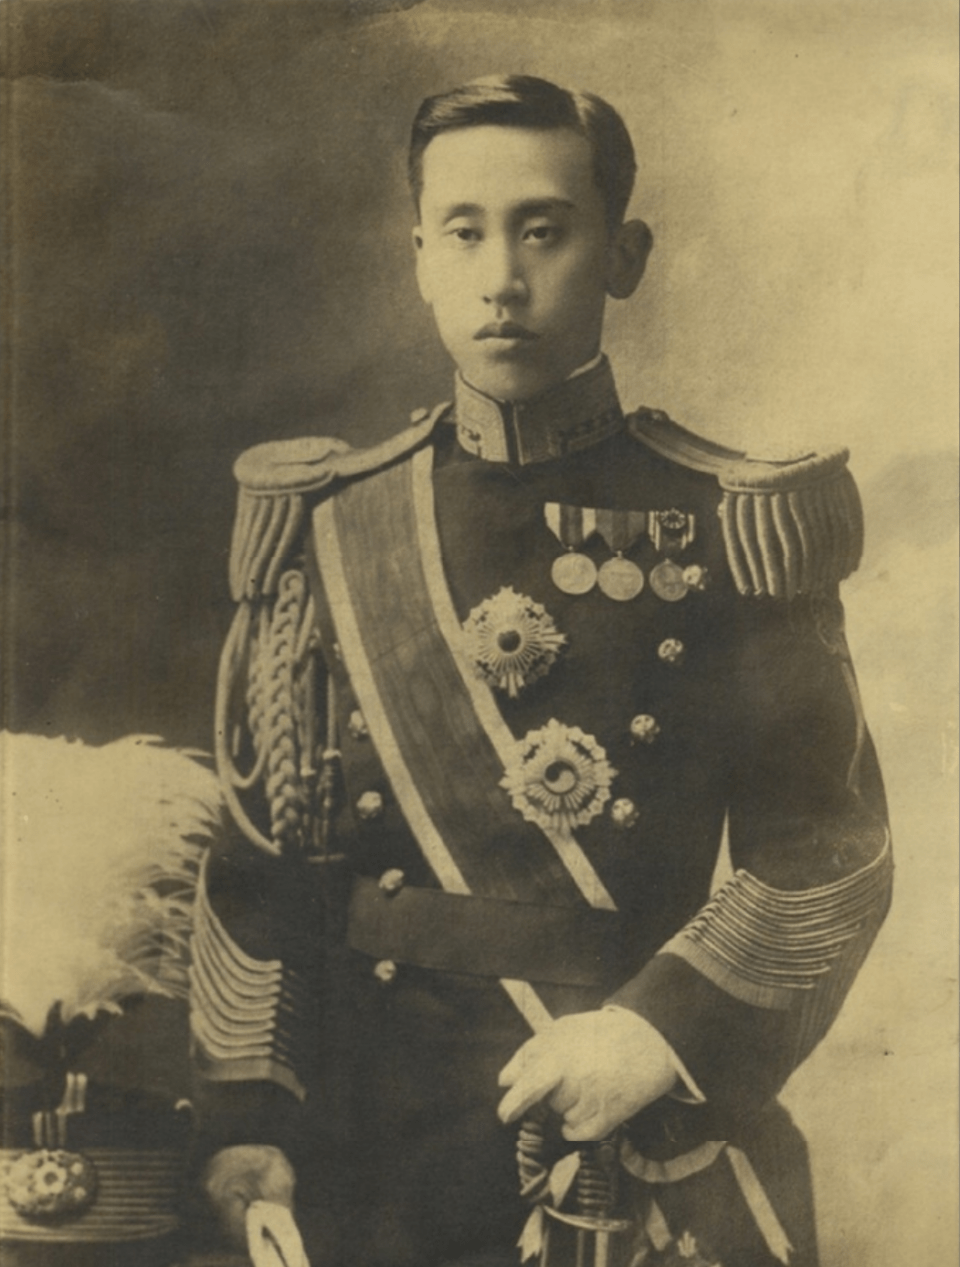 他是朝鲜王室 第一美男子 骄奢淫逸一生 却因支持光复成英雄 日本